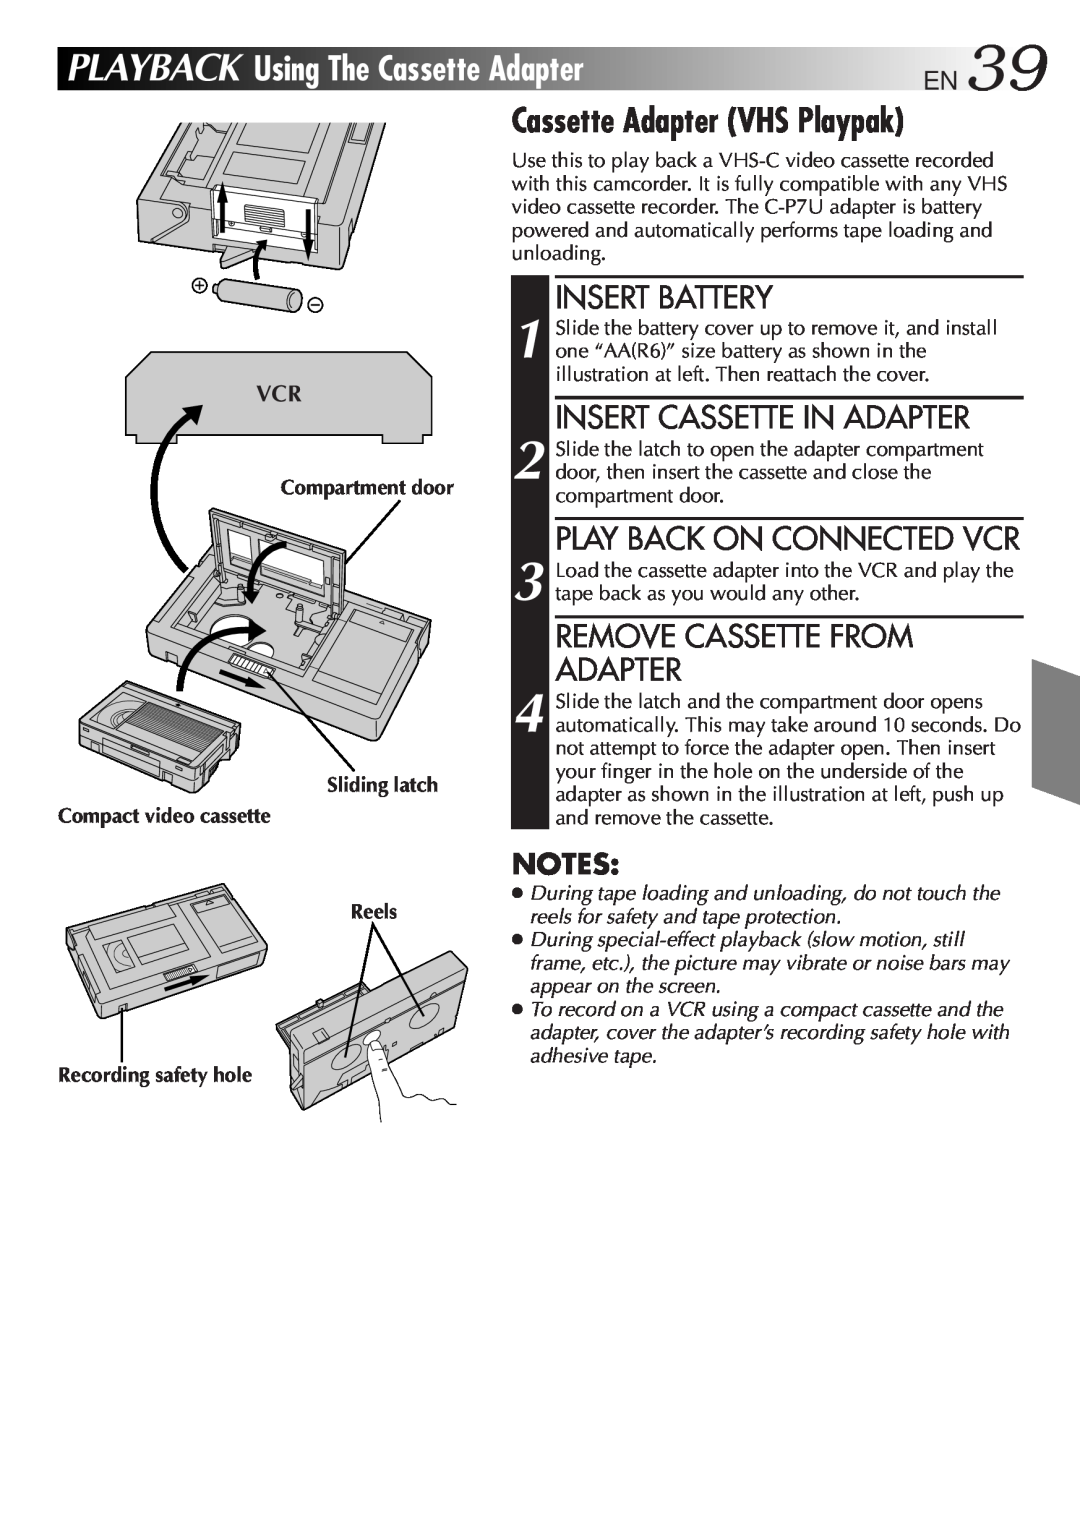 JVC GR-AXM100 manual Playback, UsingTheCassetteAdapterEN39, Cassette Adapter VHS Playpak, Insert Battery 